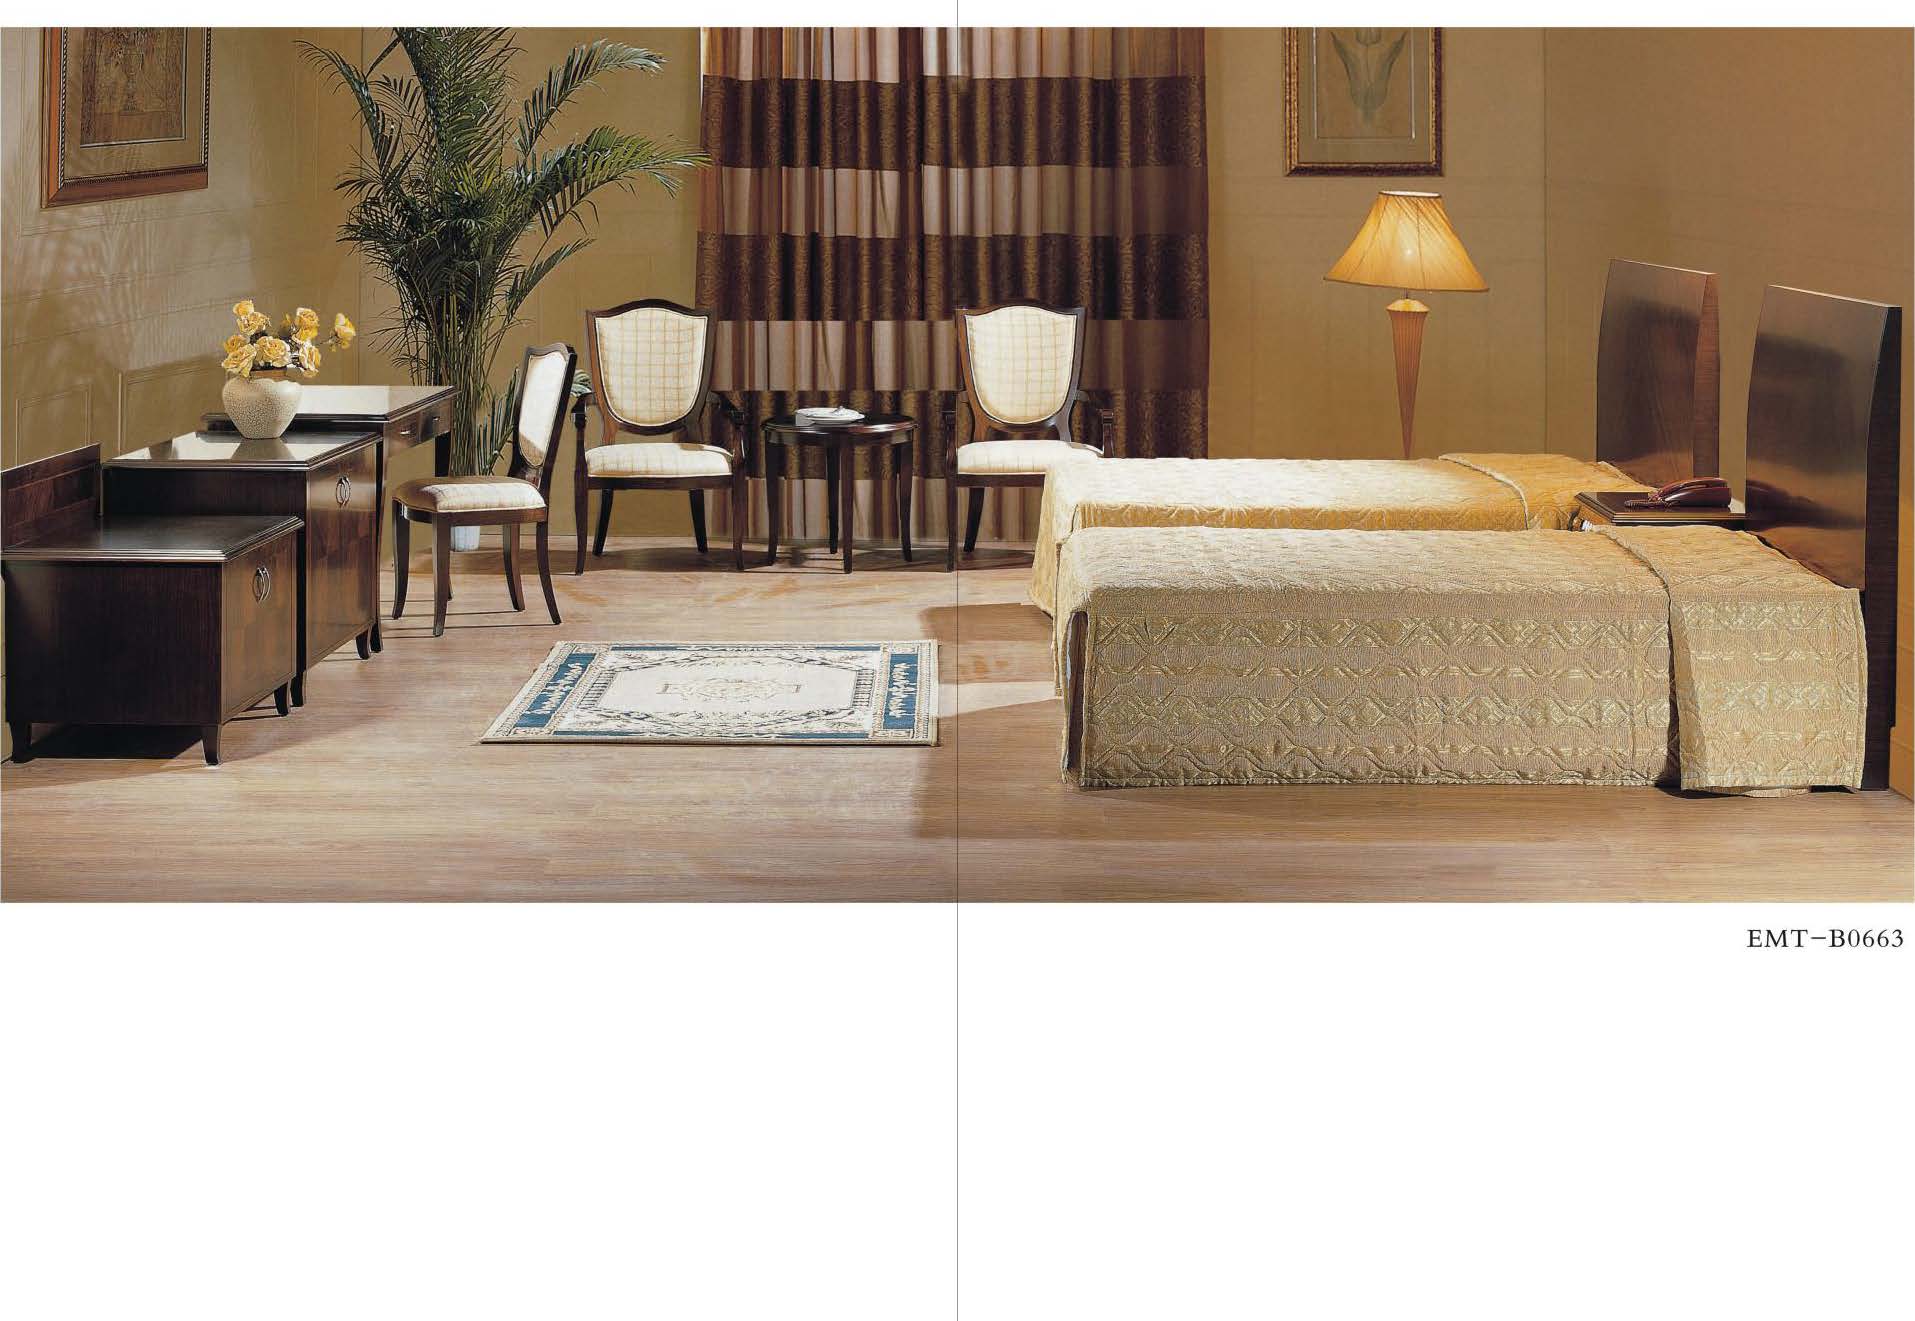 Elegant Bedroom Furniture